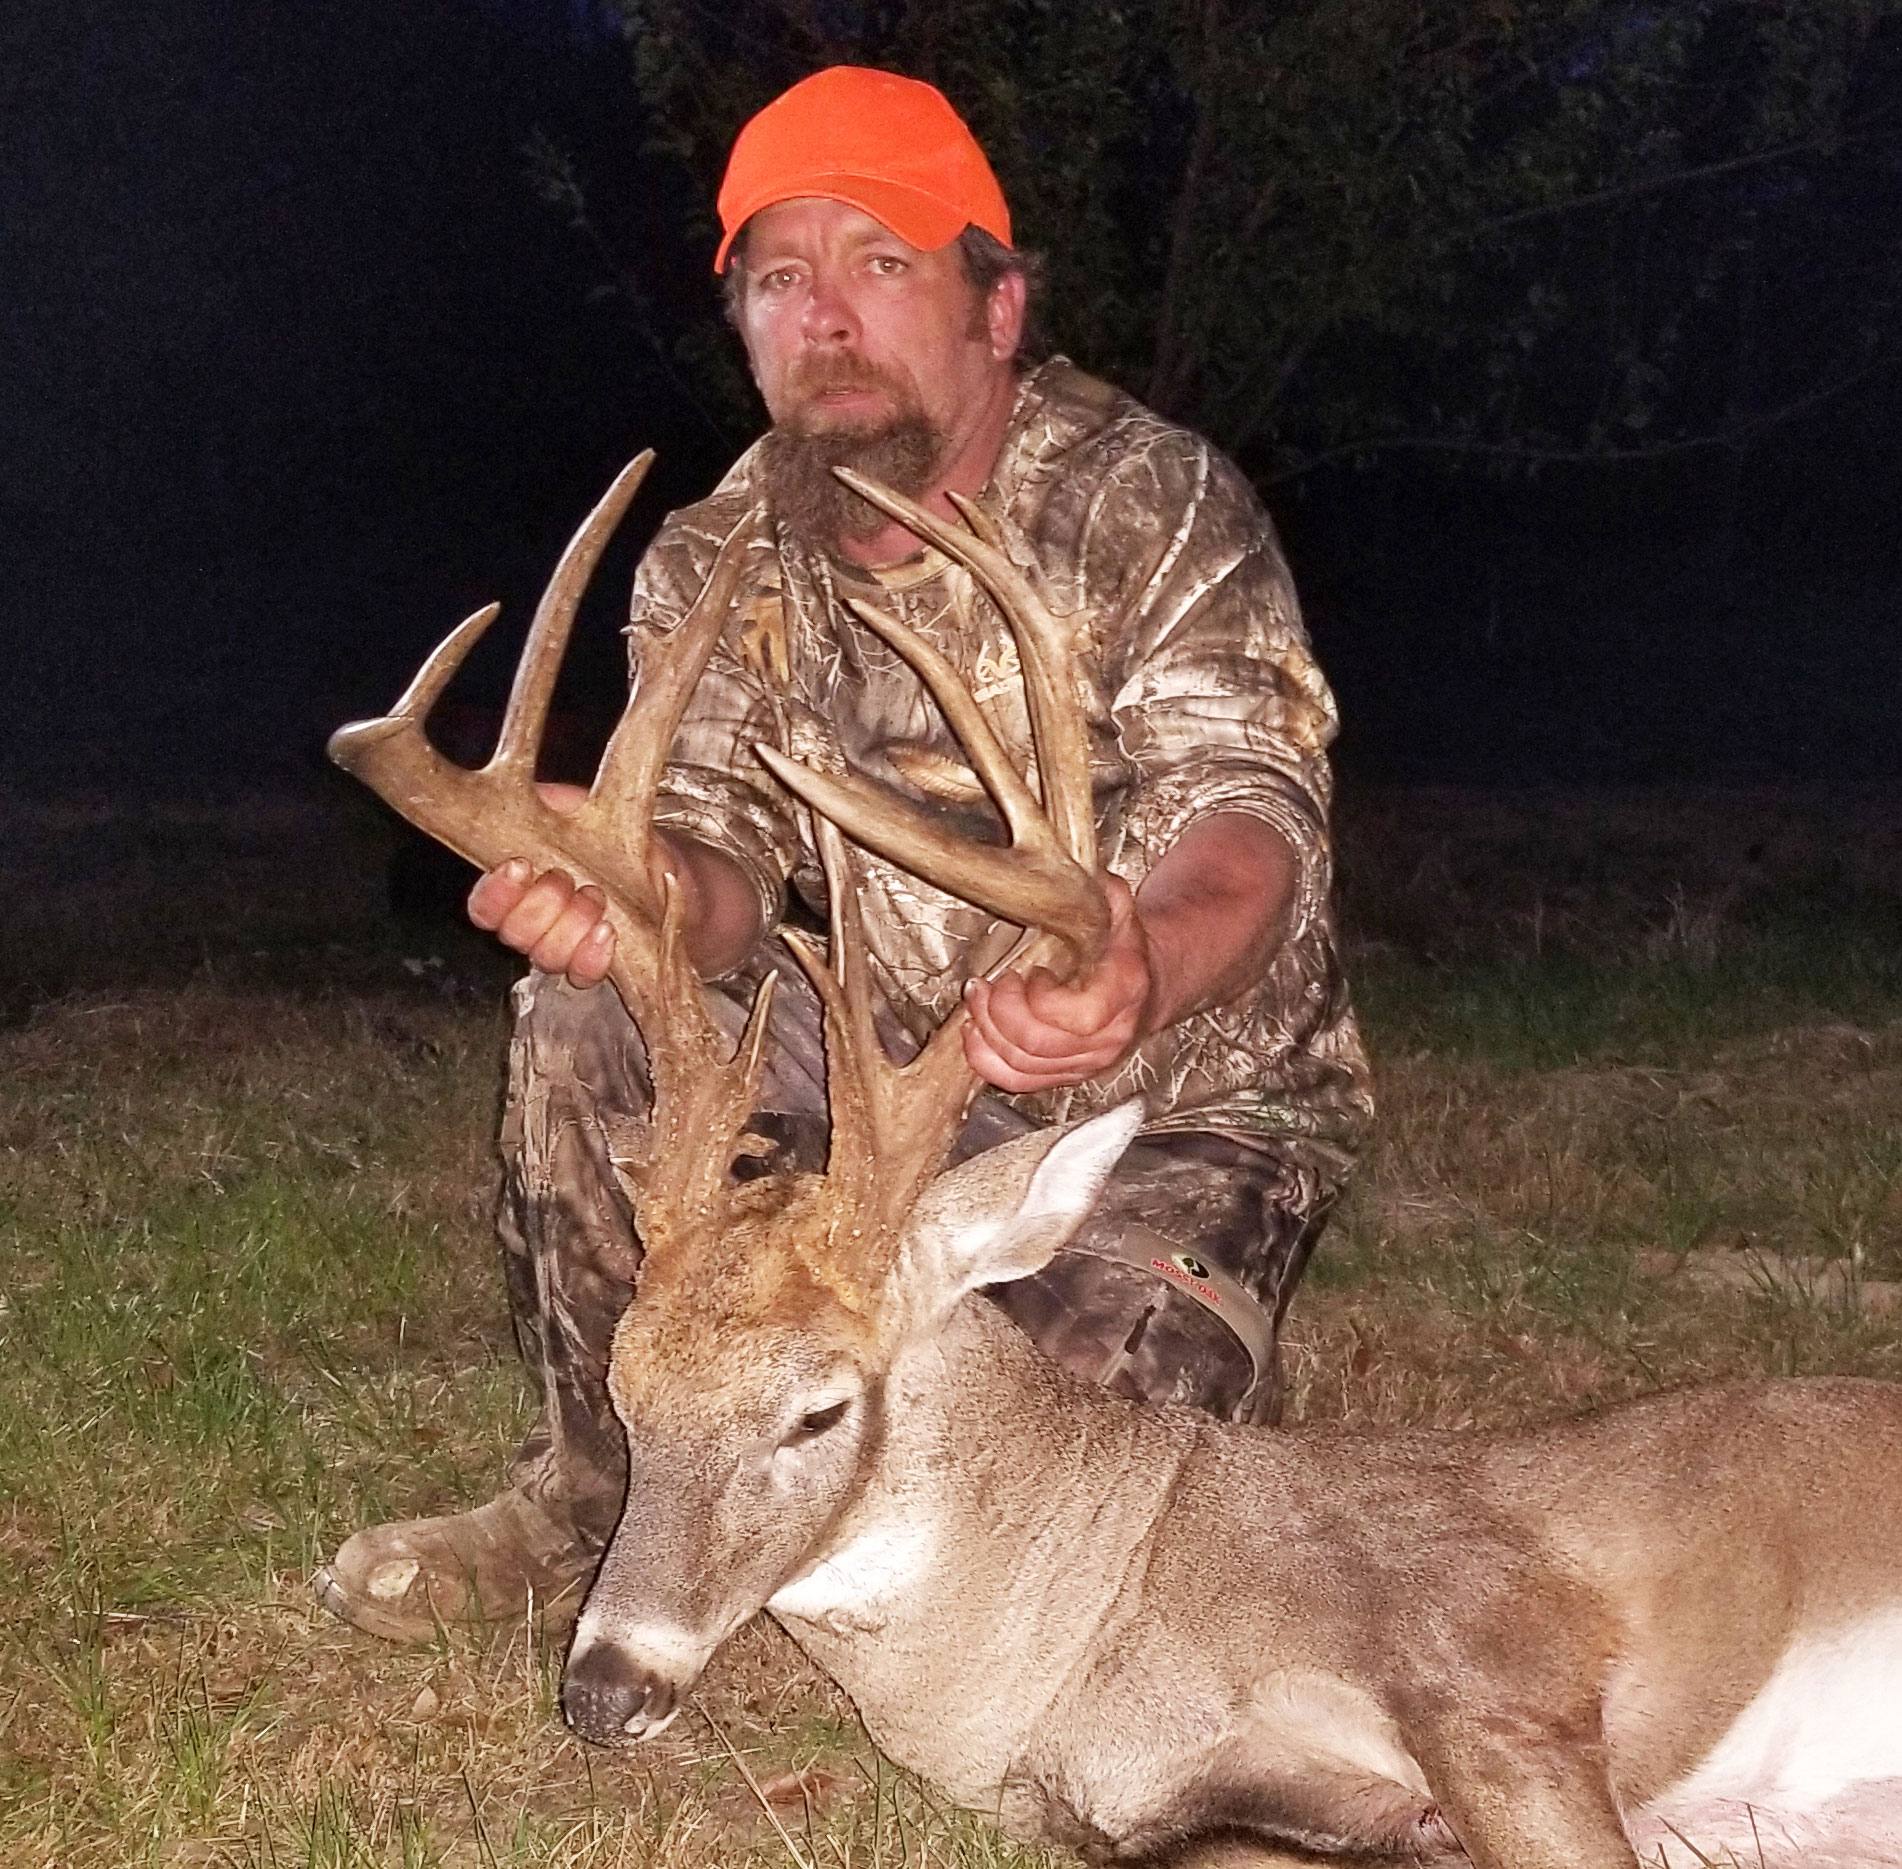 Donald Humphrey of Atlanta, Tex., killed a 174-inch trophy buck on Nov. 10 at Bodcau WMA in Bossier Parish.